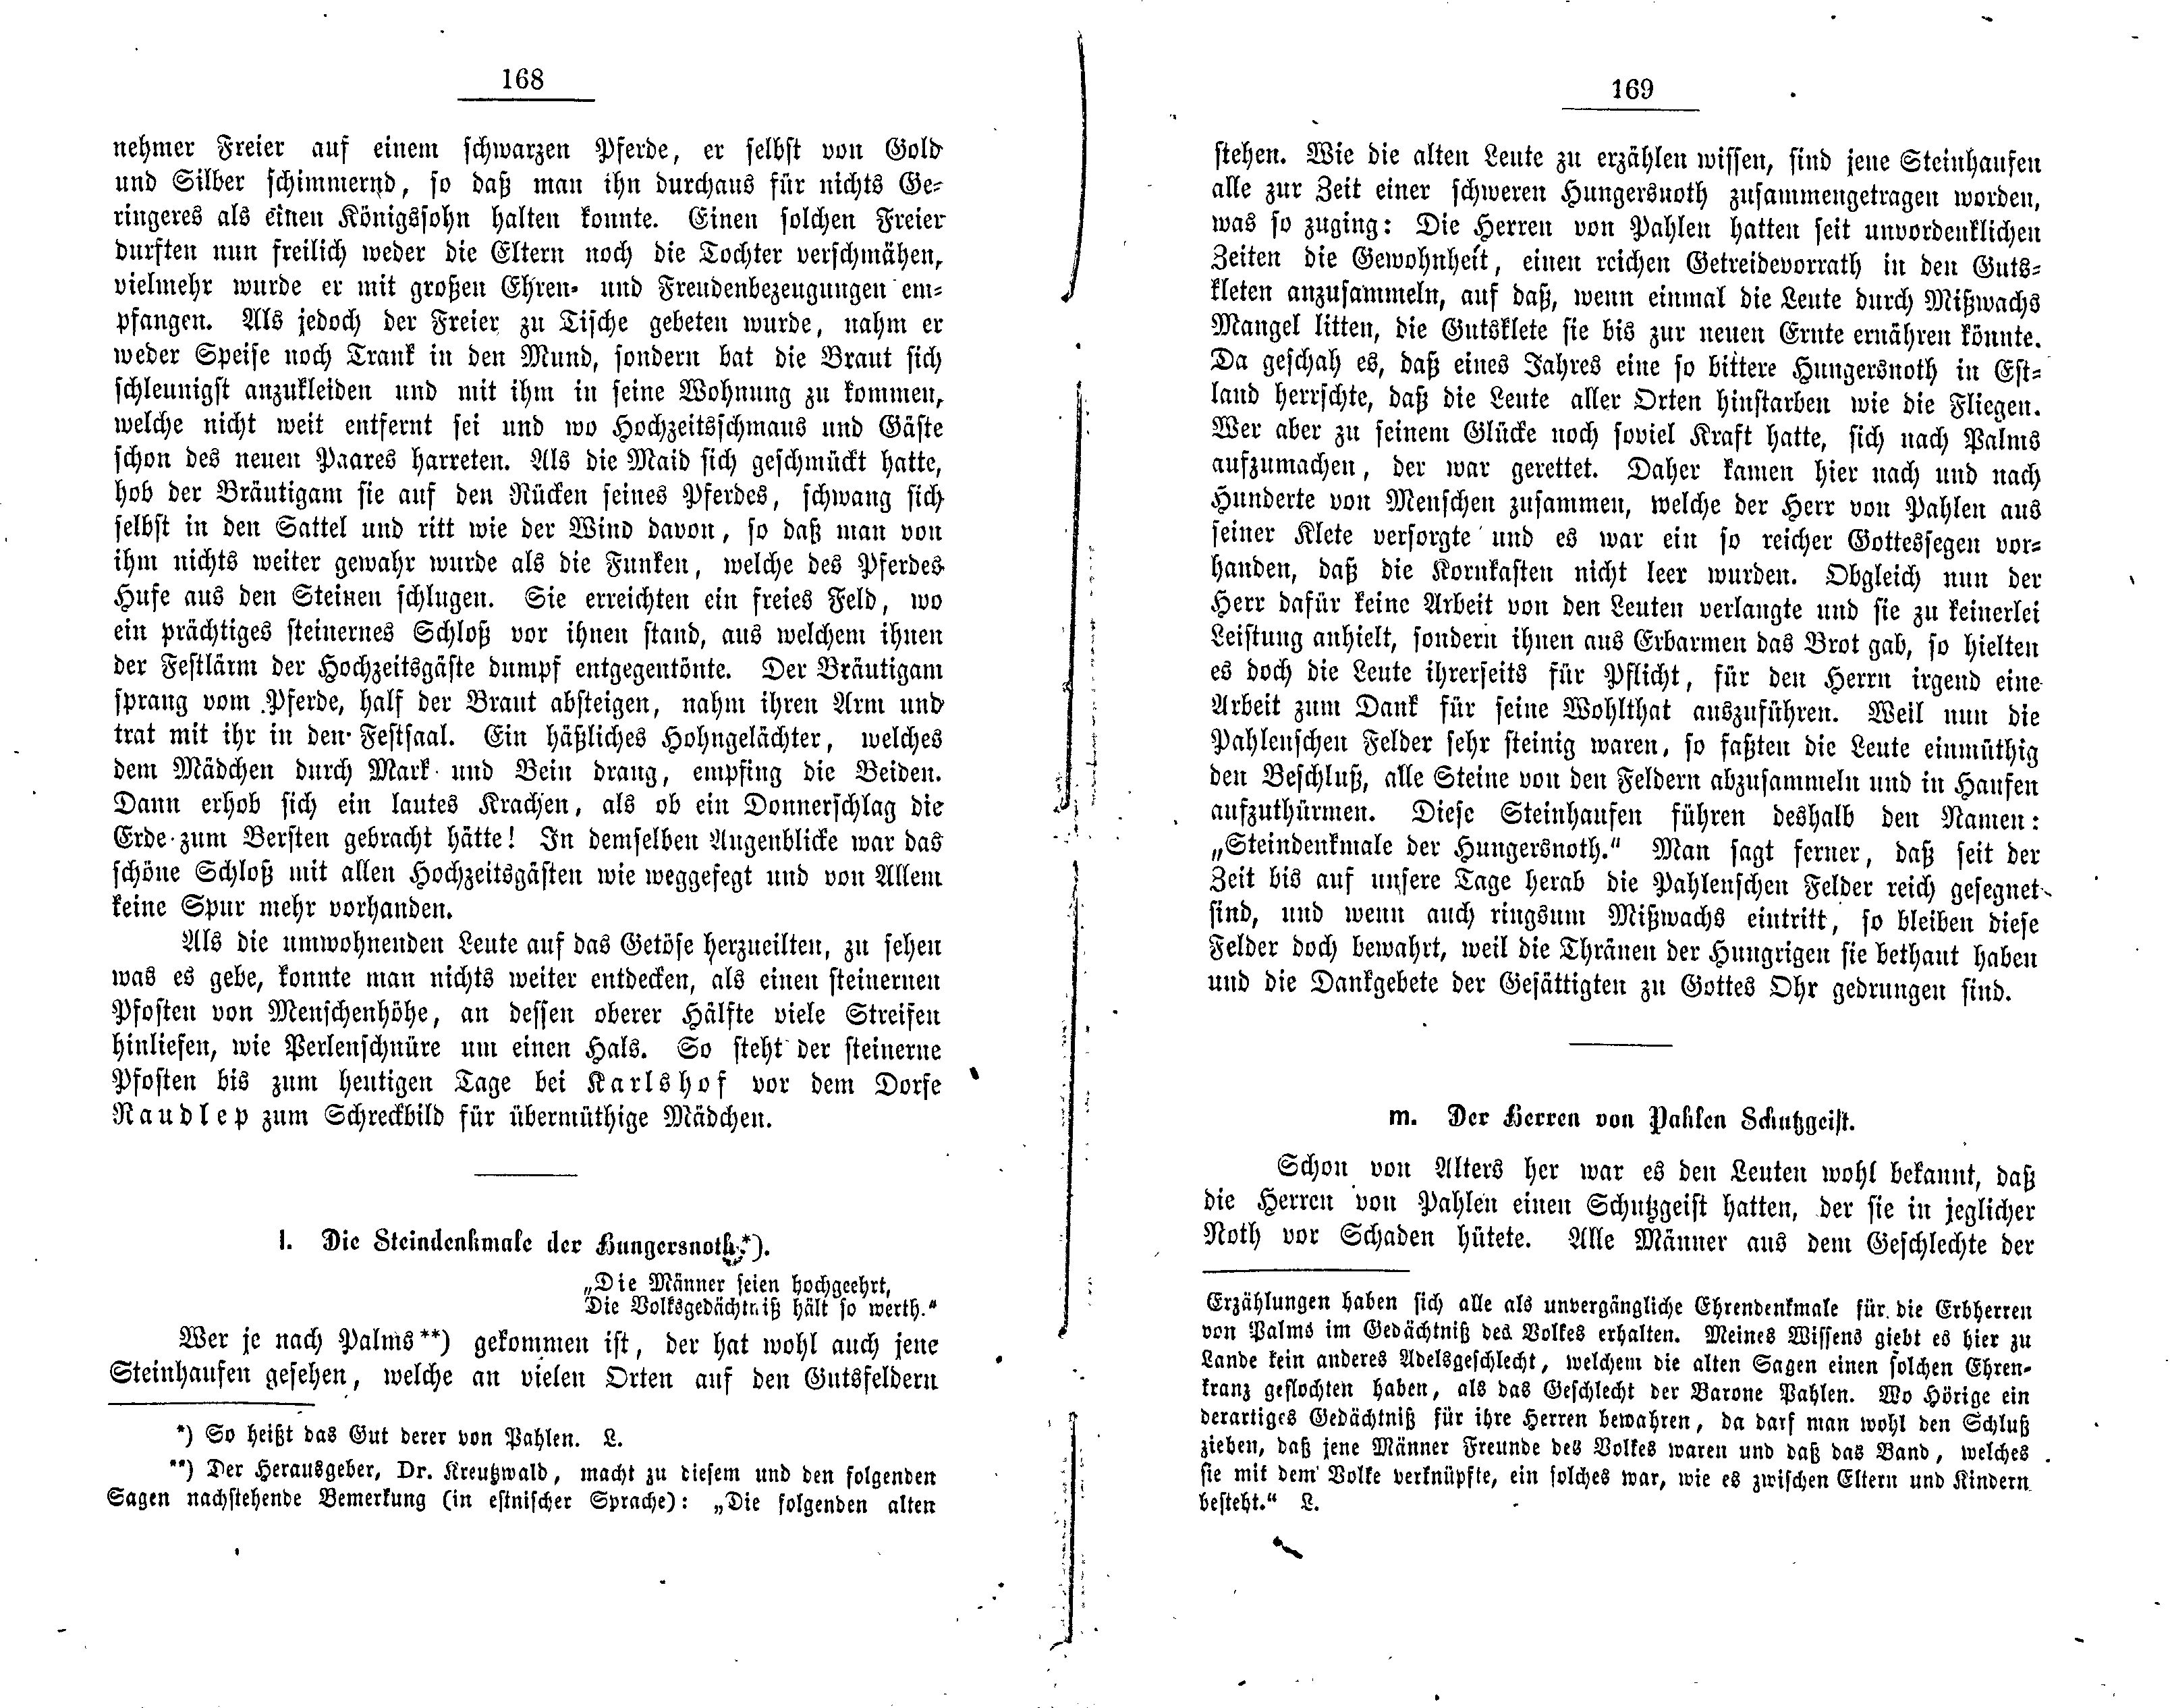 Der Herren von Pahlen Schutzgeist (1881) | 1. (168-169) Основной текст